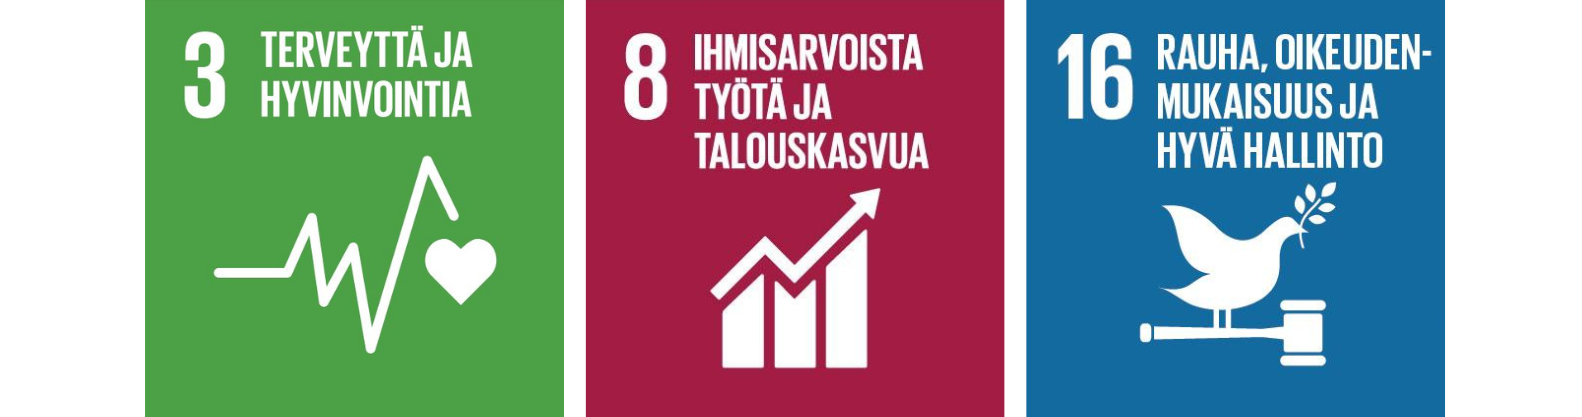 SDG tavoitekuvat 3,8,16